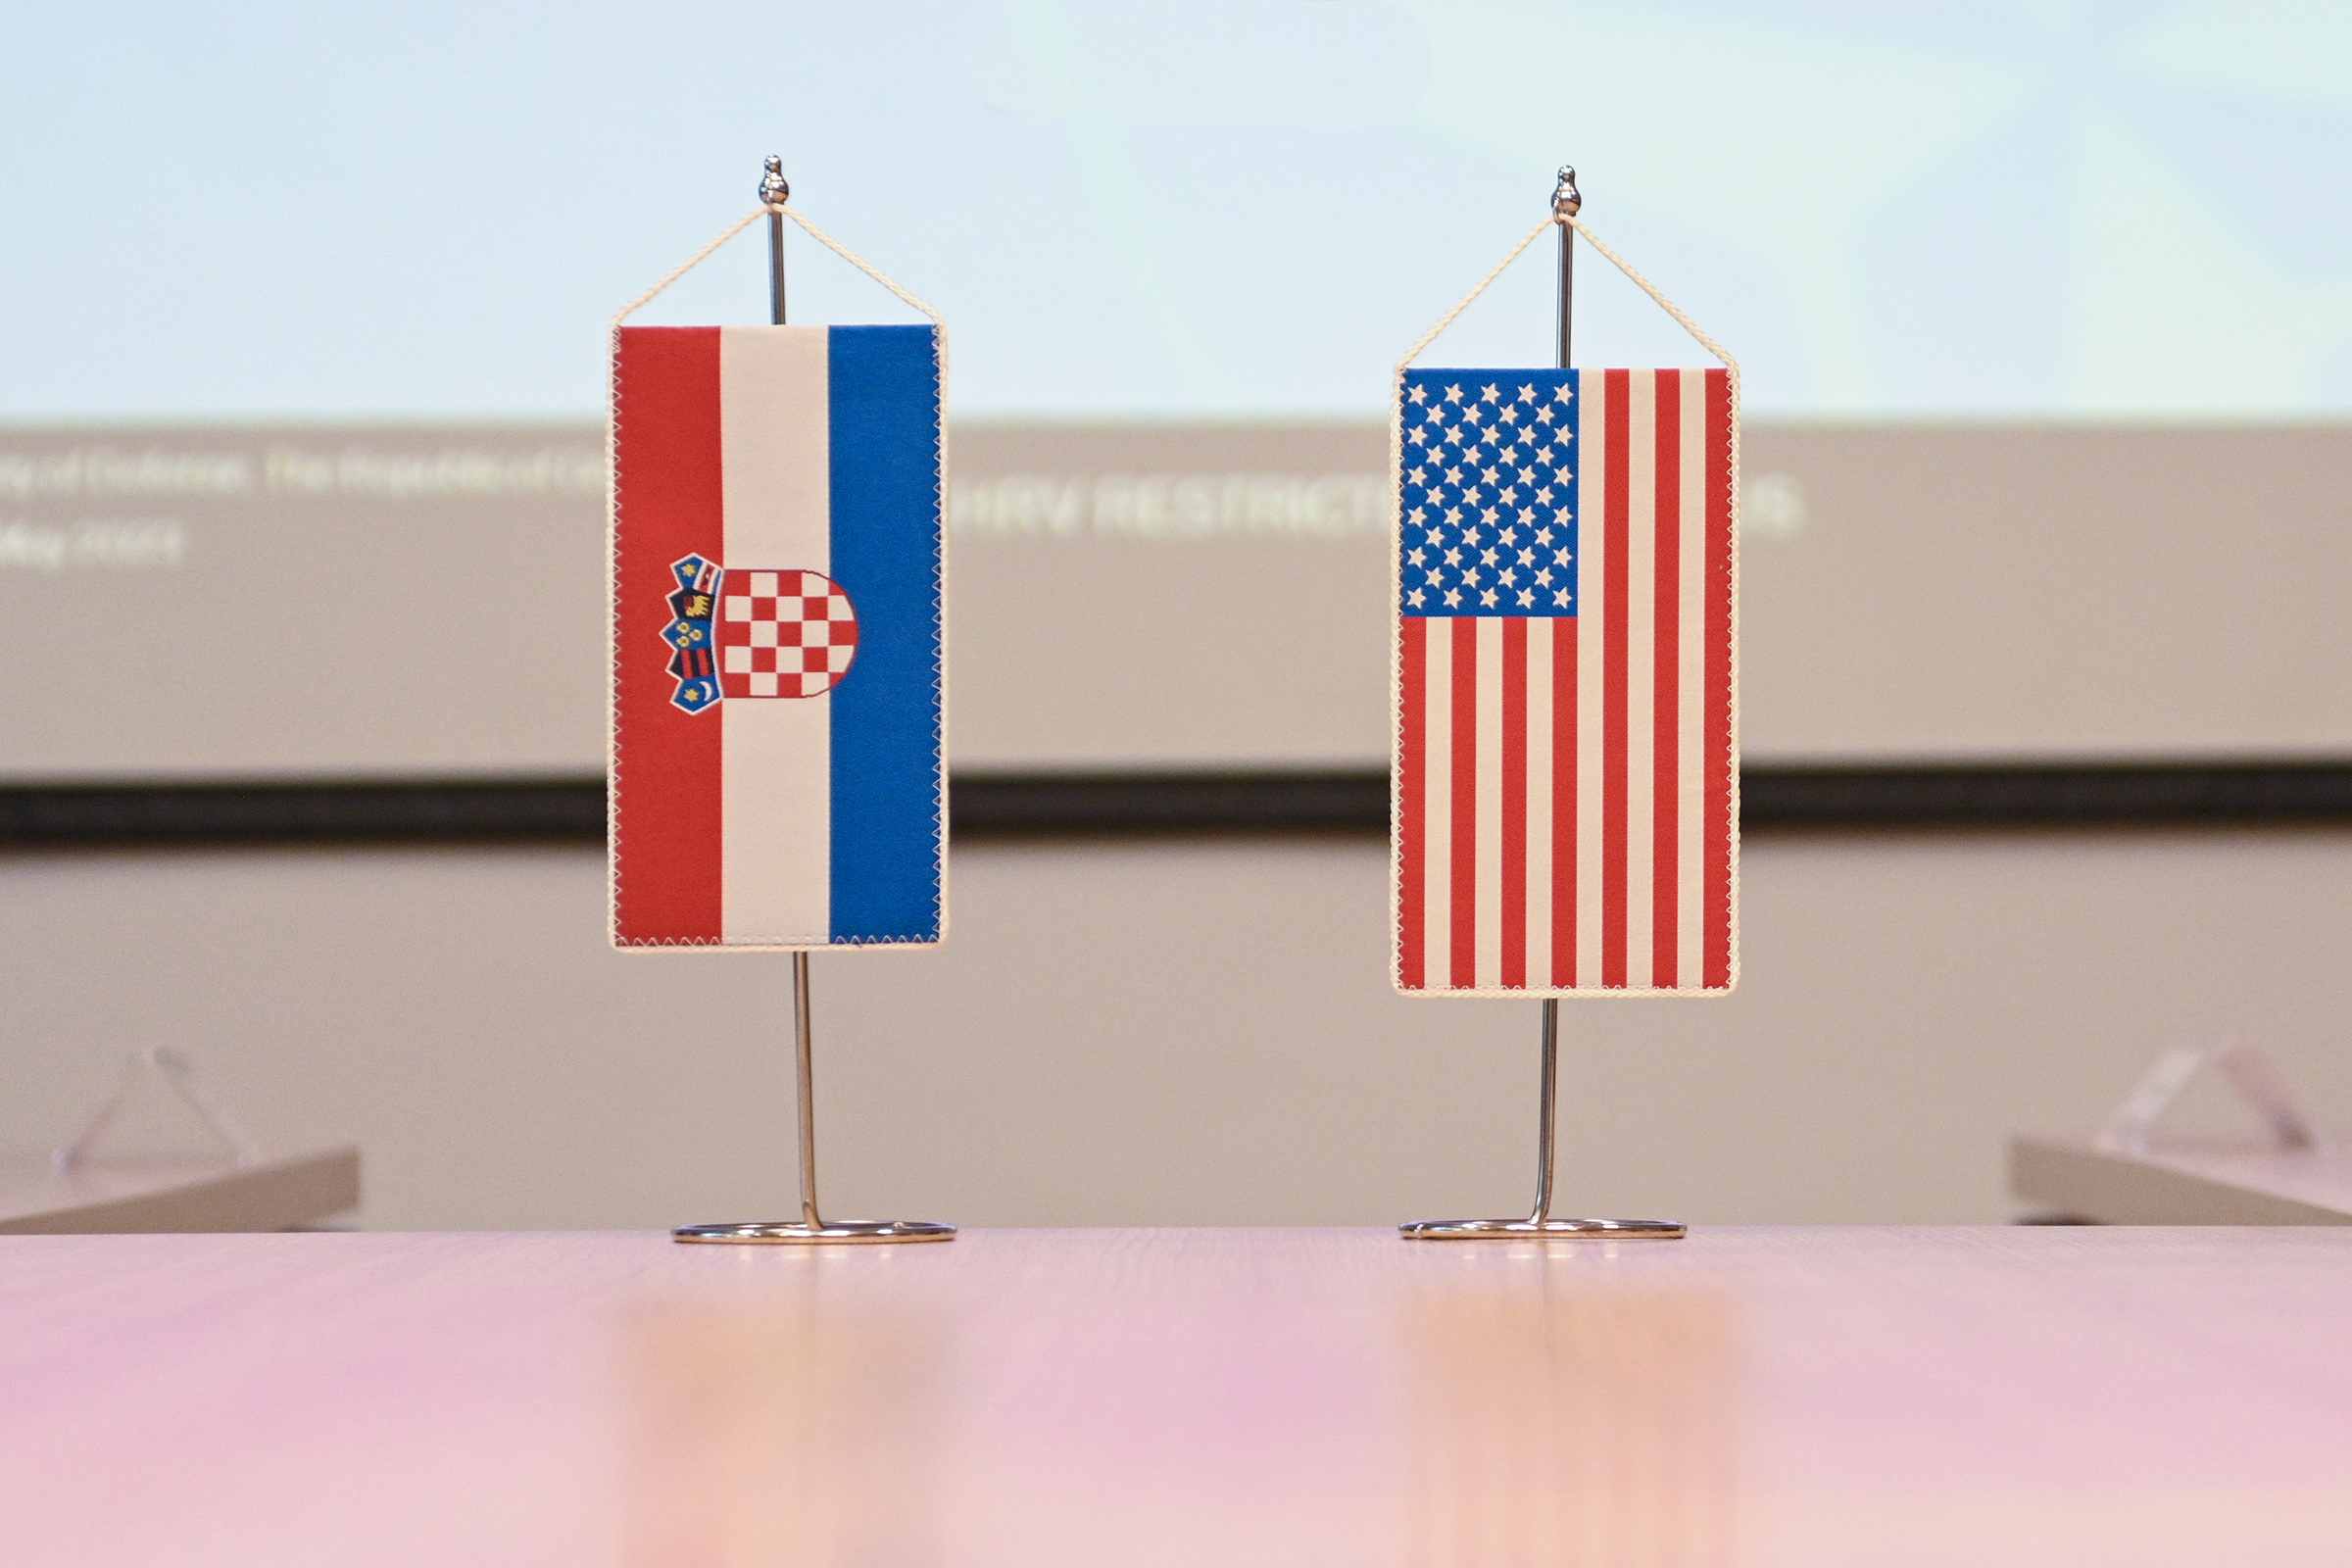 Bilateralne obrambene konzultacije Republike Hrvatske i Sjedinjenih Američkih Država